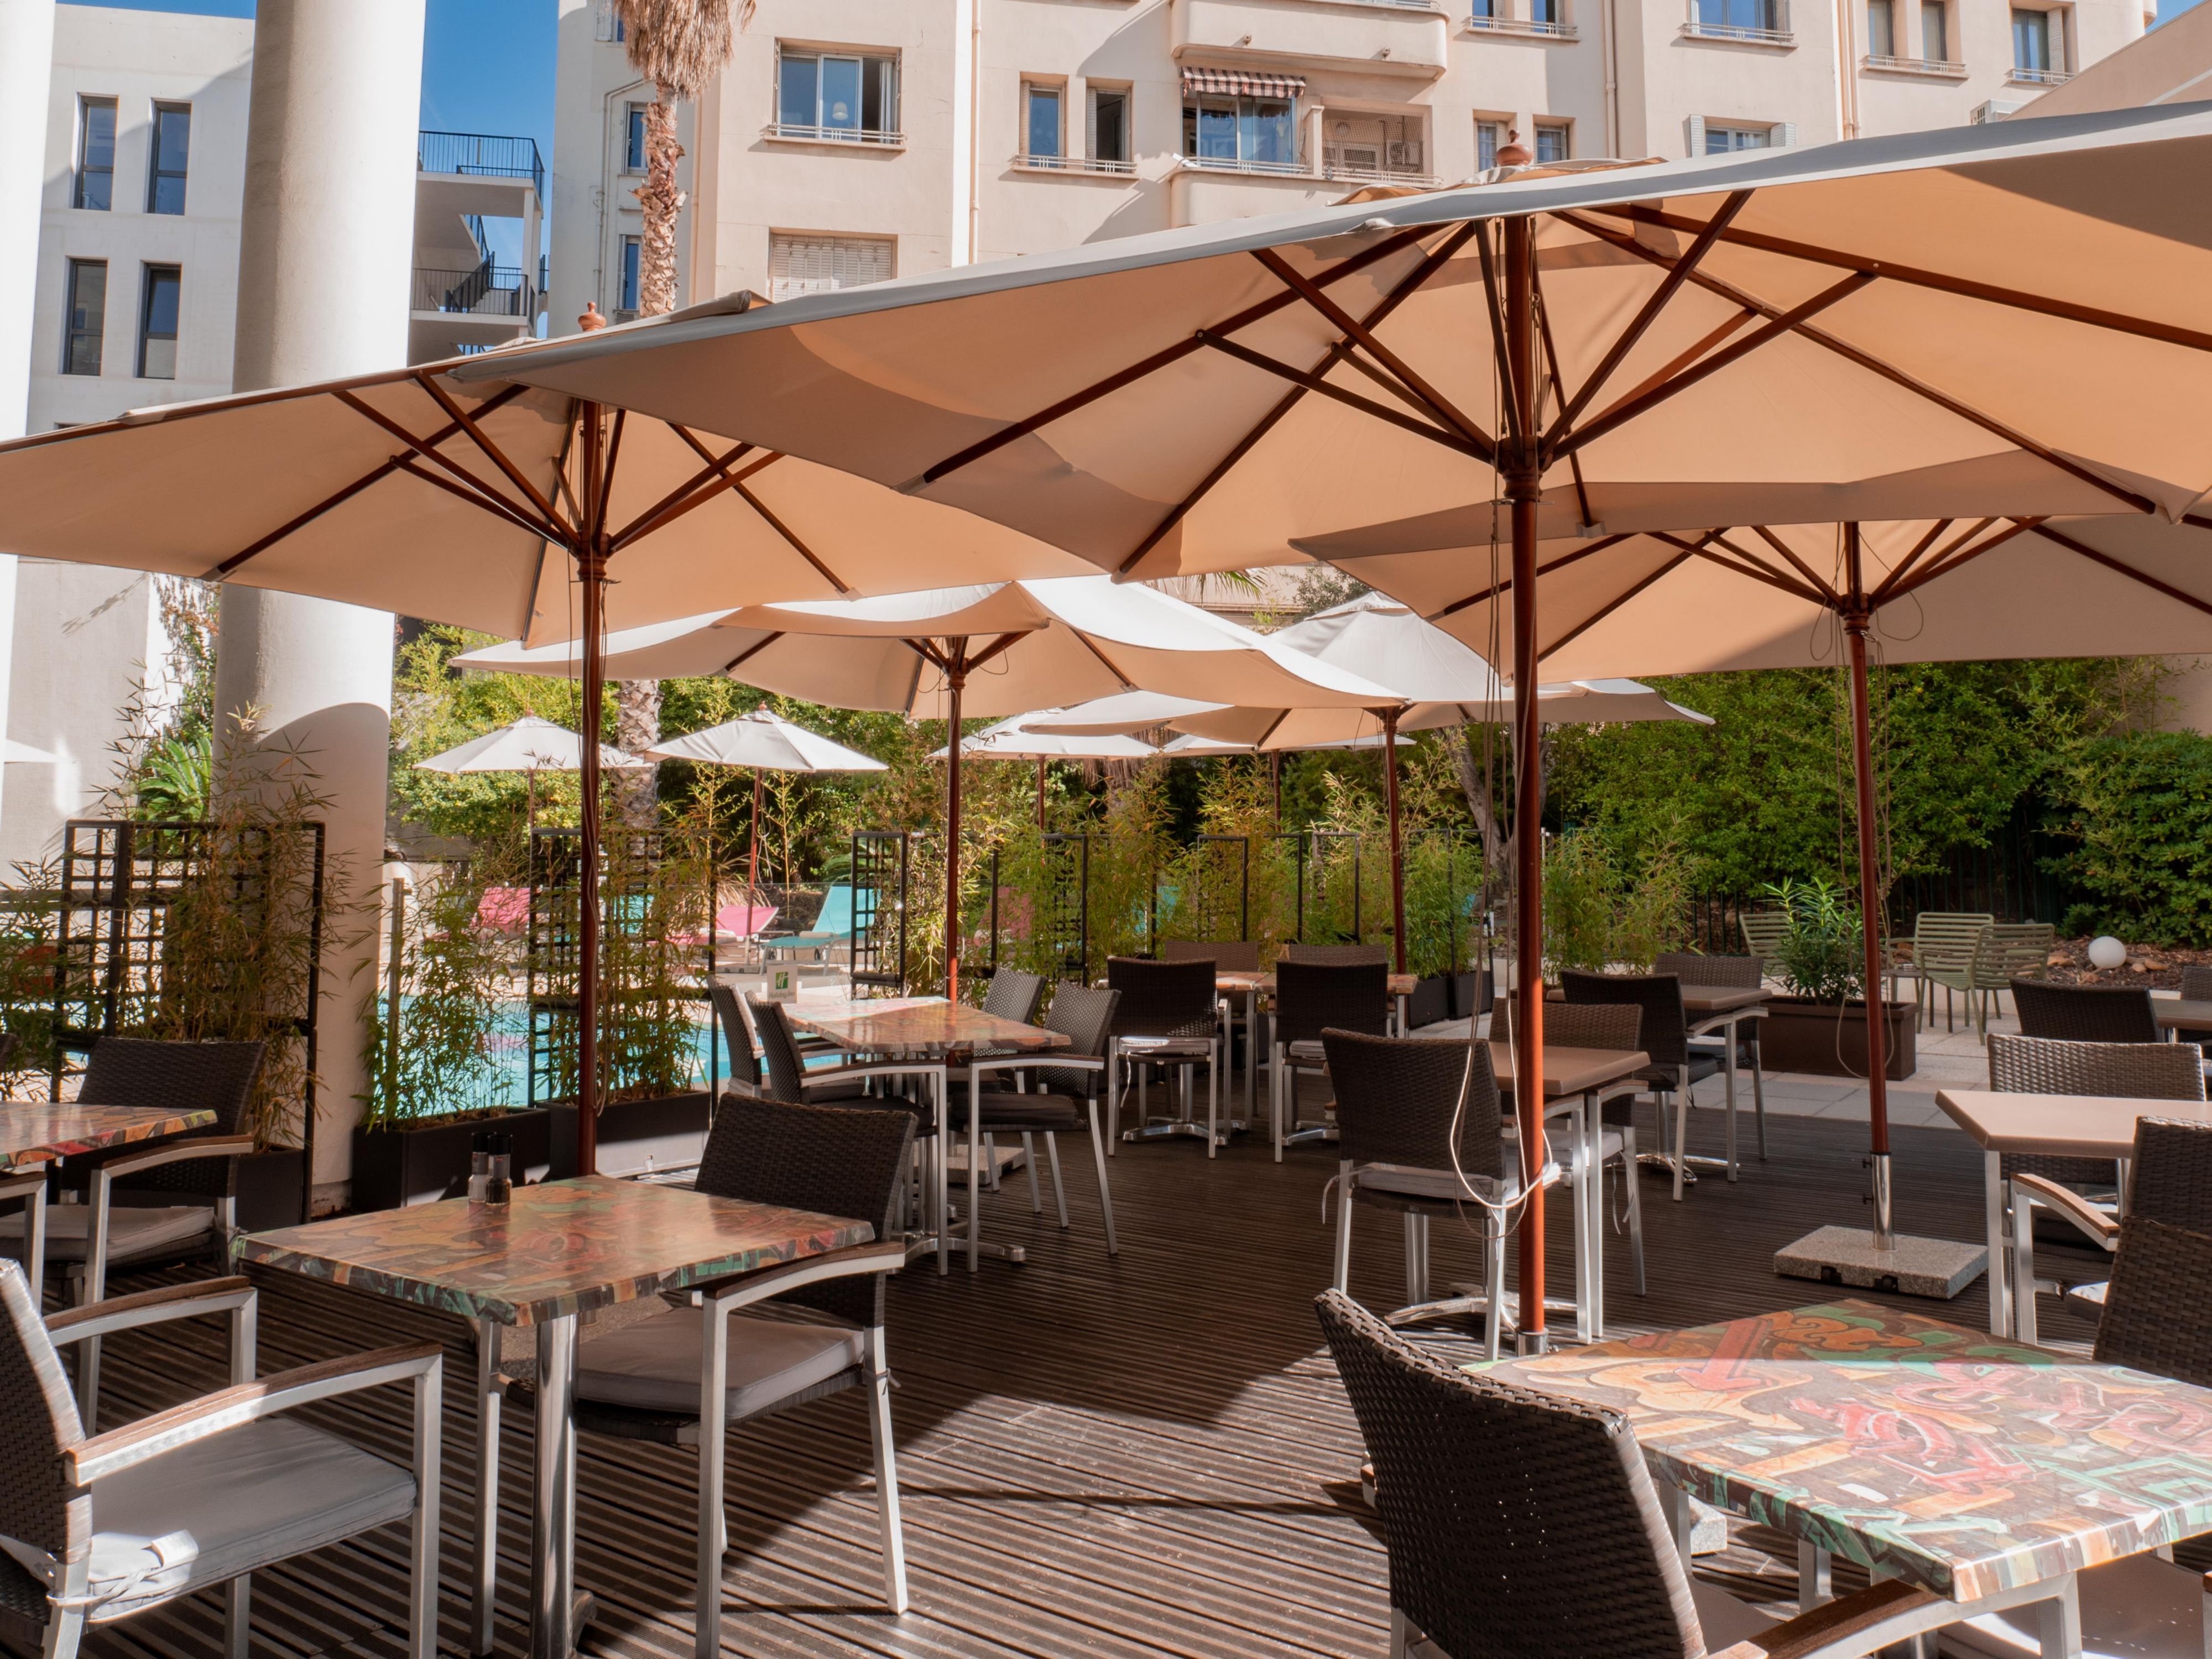 Découvrez une cuisine savoureuse aux accents méditerranéens, à déguster en salle climatisée ou en terrasse ombragée au bord de la piscine.  Suggestions tous les jours en fonction du marché.